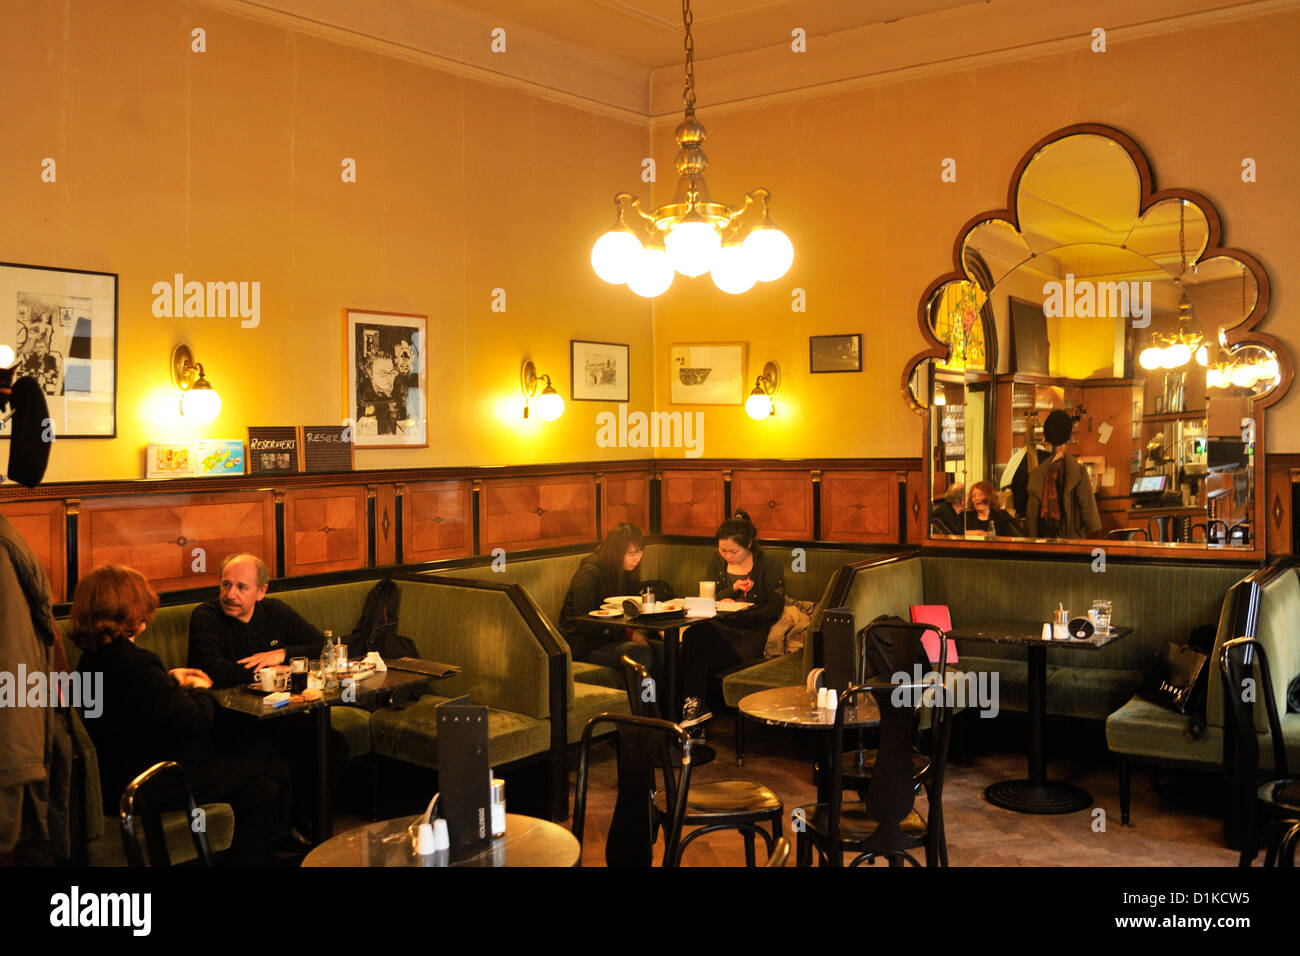 Österreich, Wien IV, Cafe Goldegg, Goldeggasse 22, Altes Wiener Kaffeehaus  Stockfotografie - Alamy